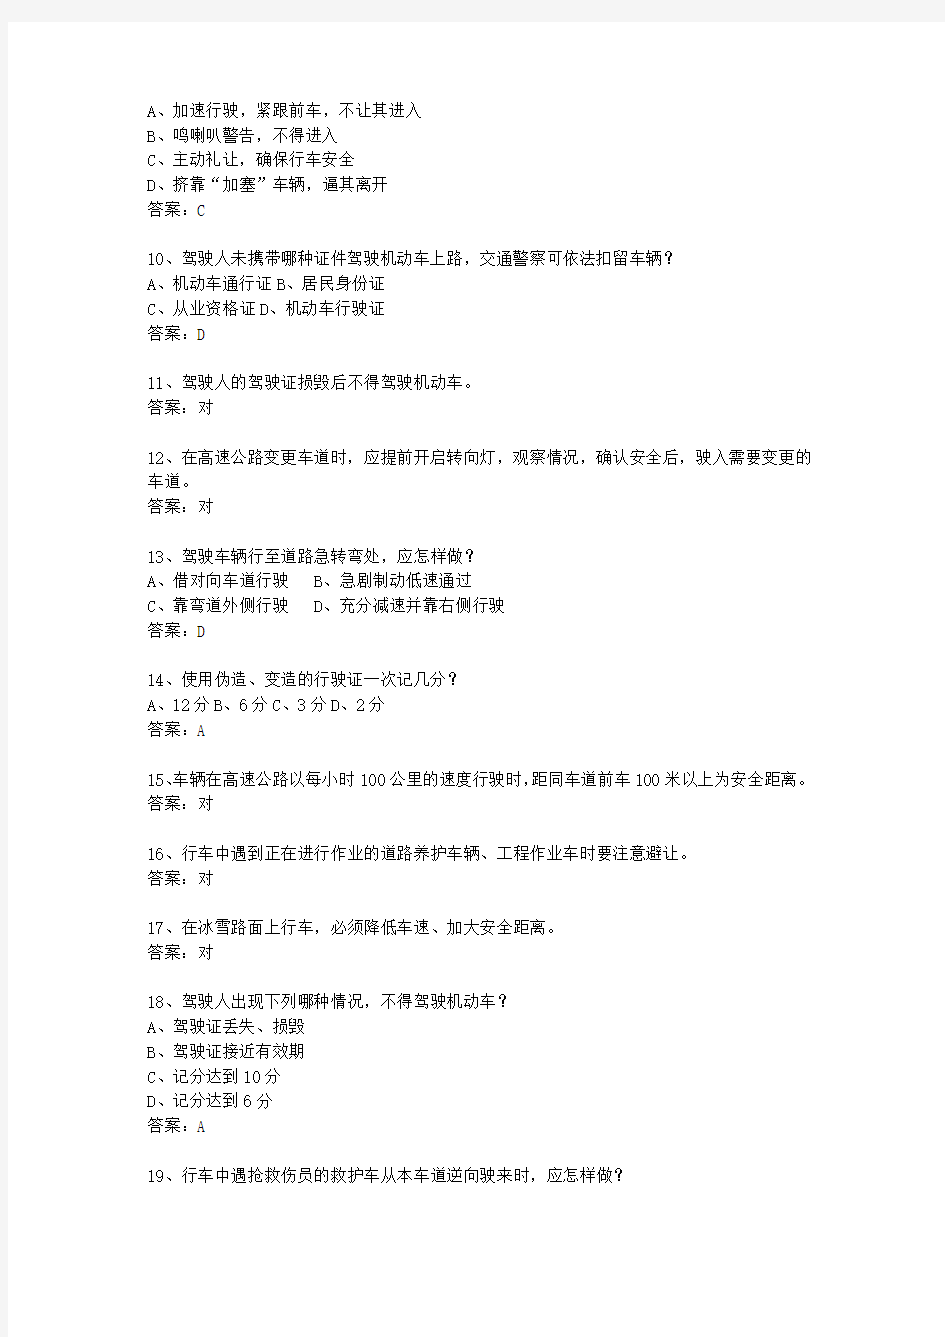 2014广东省驾校考试科目一手动挡考试重点和考试技巧